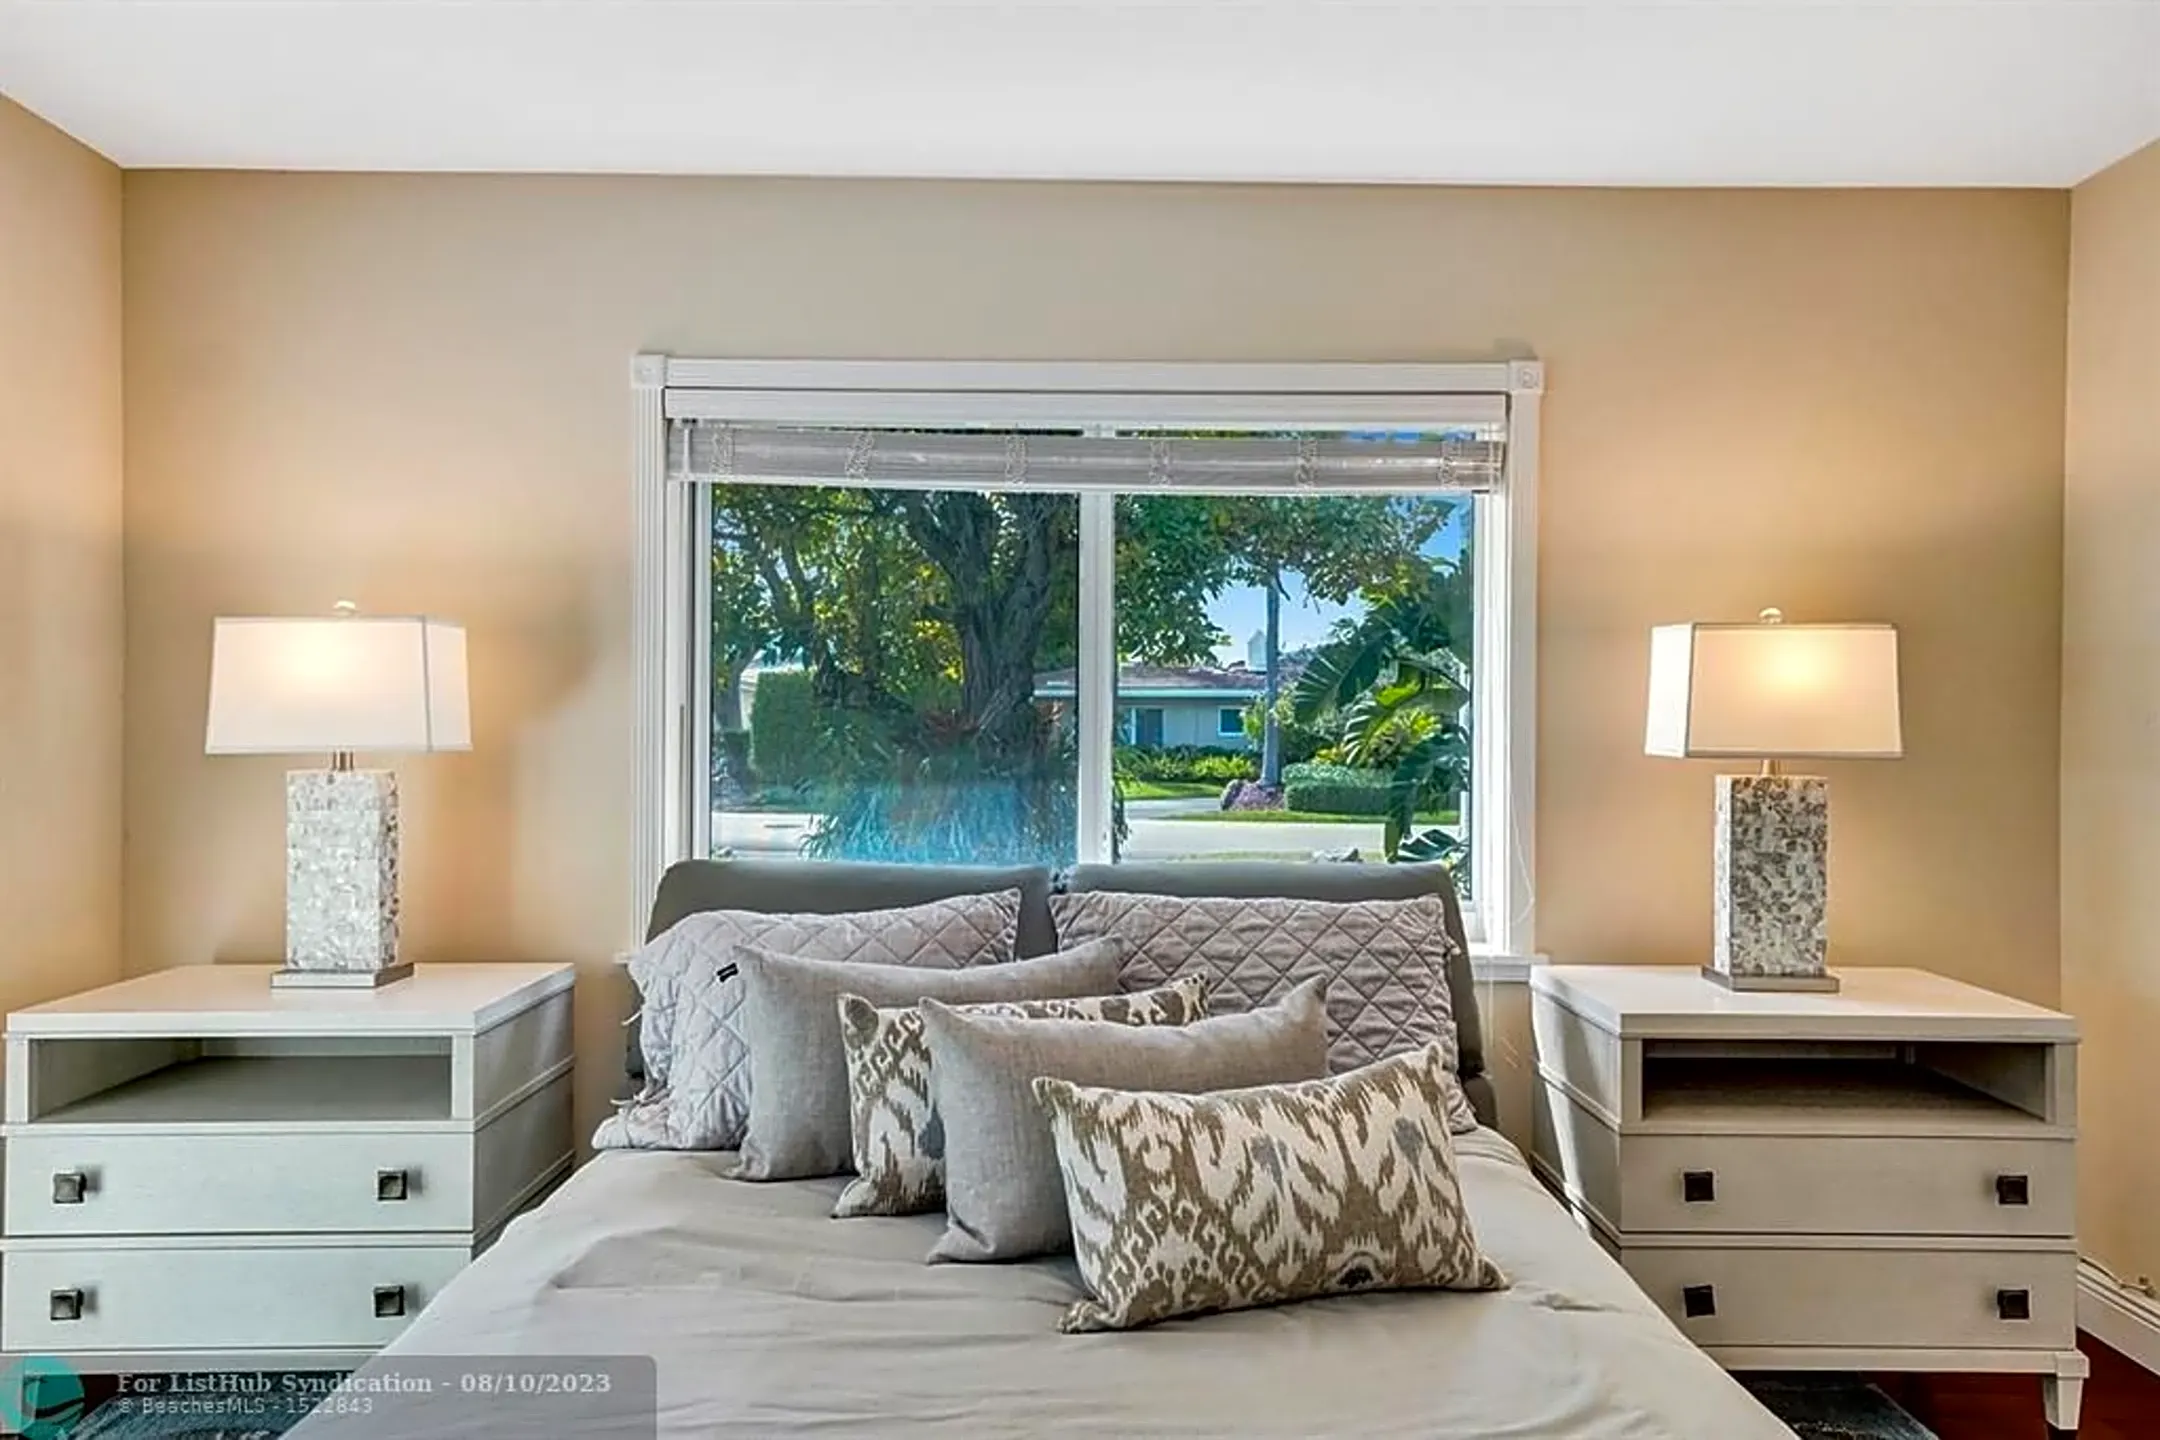 Bedroom - 2300 Middle River Dr - Fort Lauderdale, FL